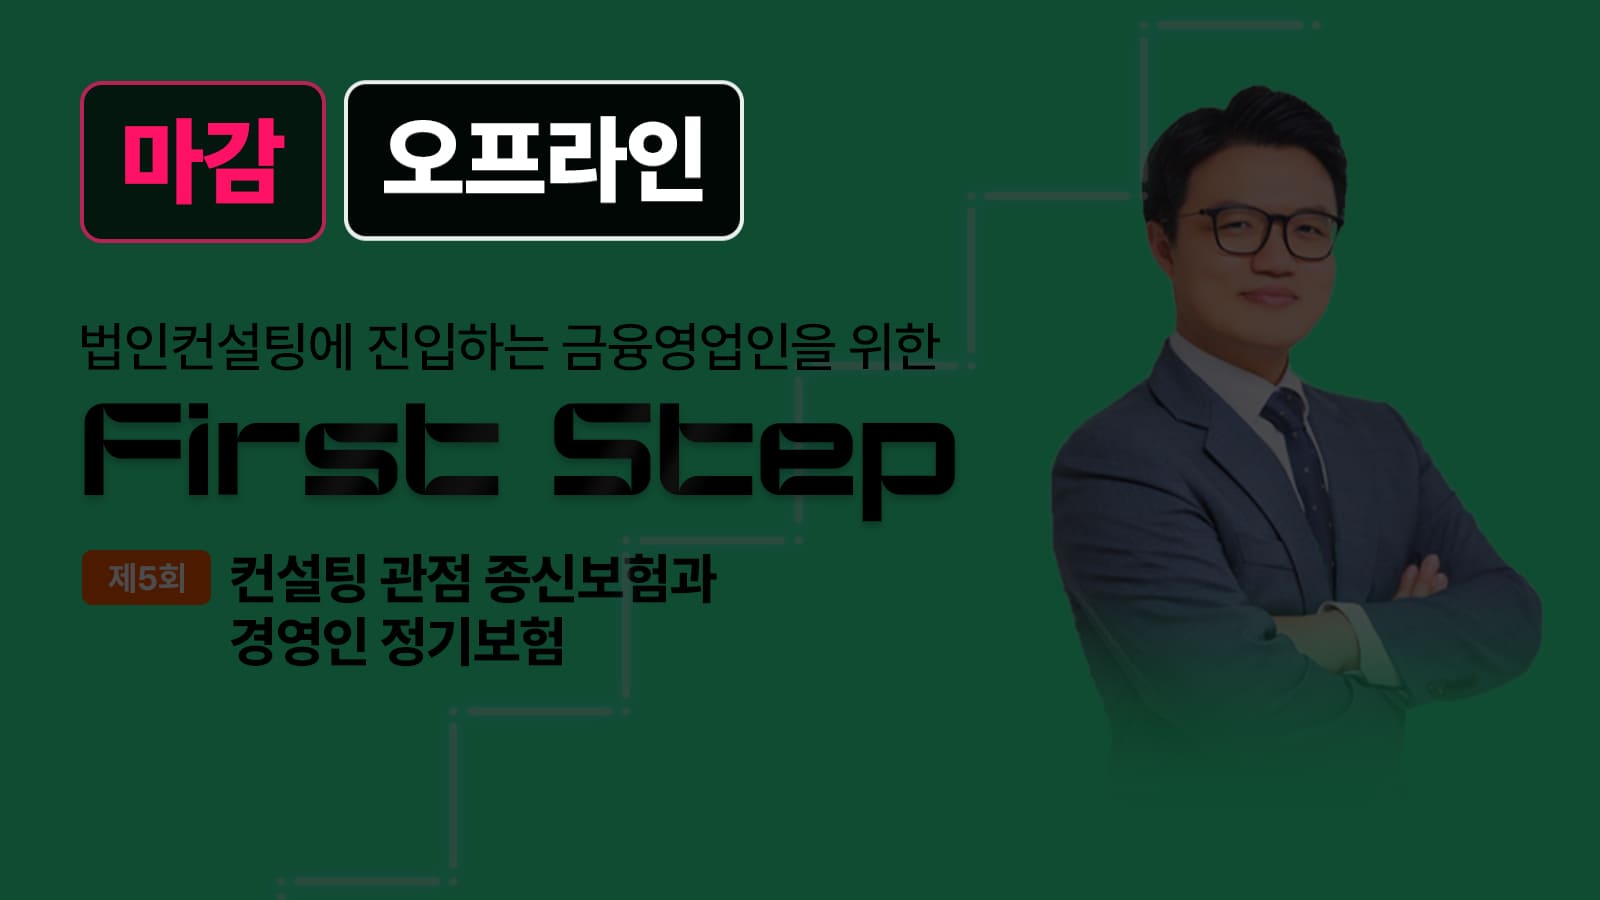 First Step – 4월 17일 정준 회계사